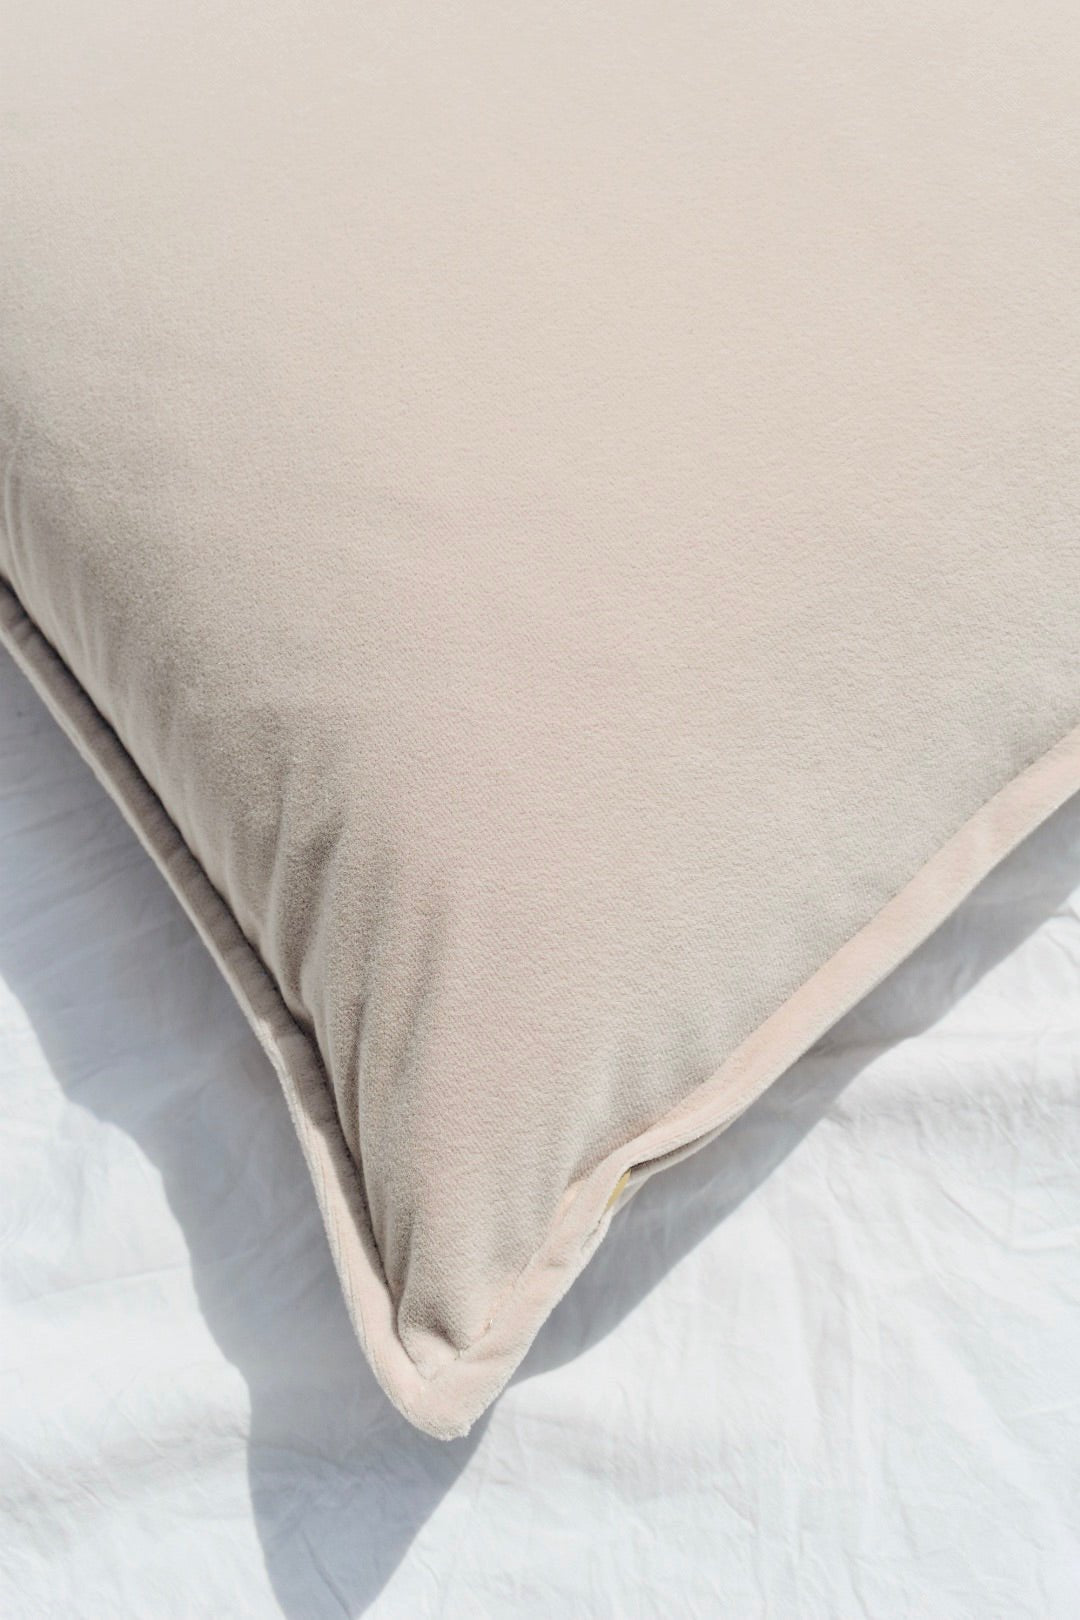 Dune Velvet Pillow Cover - Ardent Market - Ardent Market